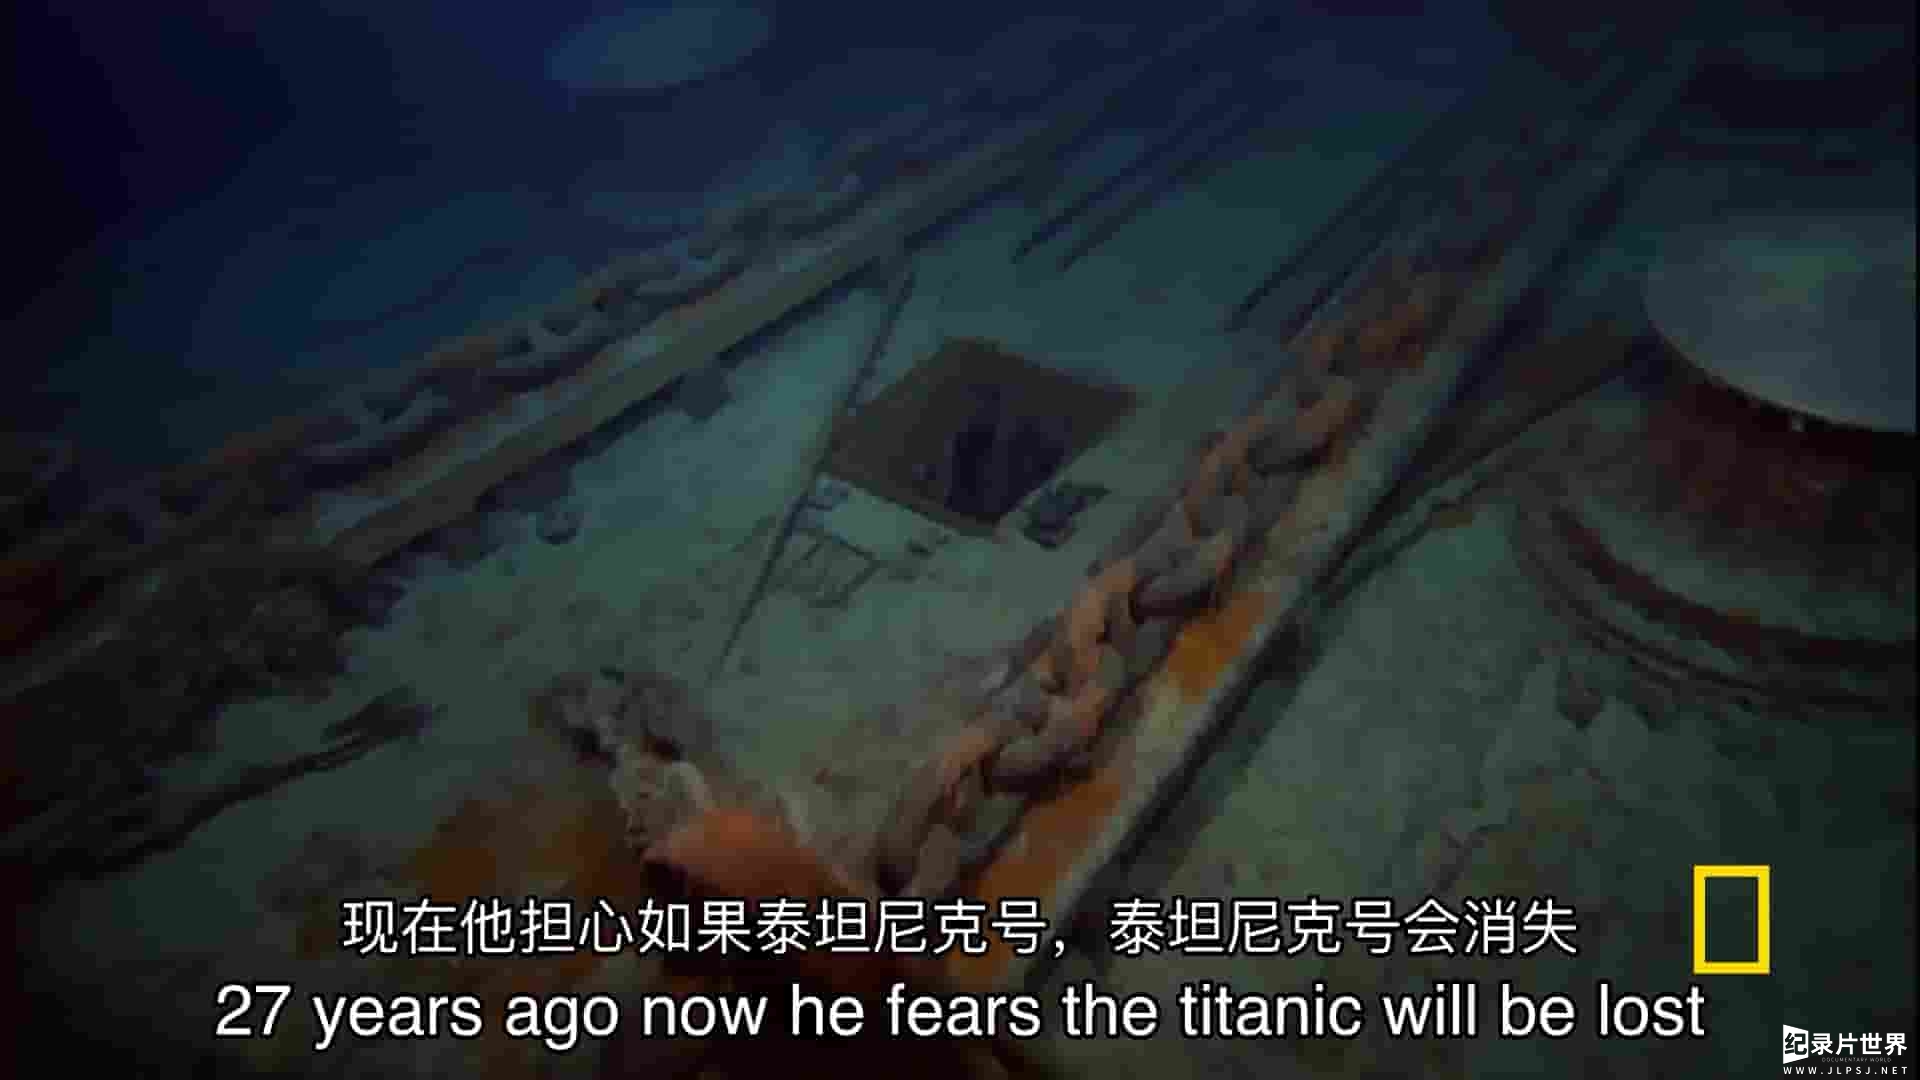 国家地理《和罗伯特巴拉德一起拯救泰坦尼克号/船骸之下 Save the Titanic With Bob Ballard 2012》全1集